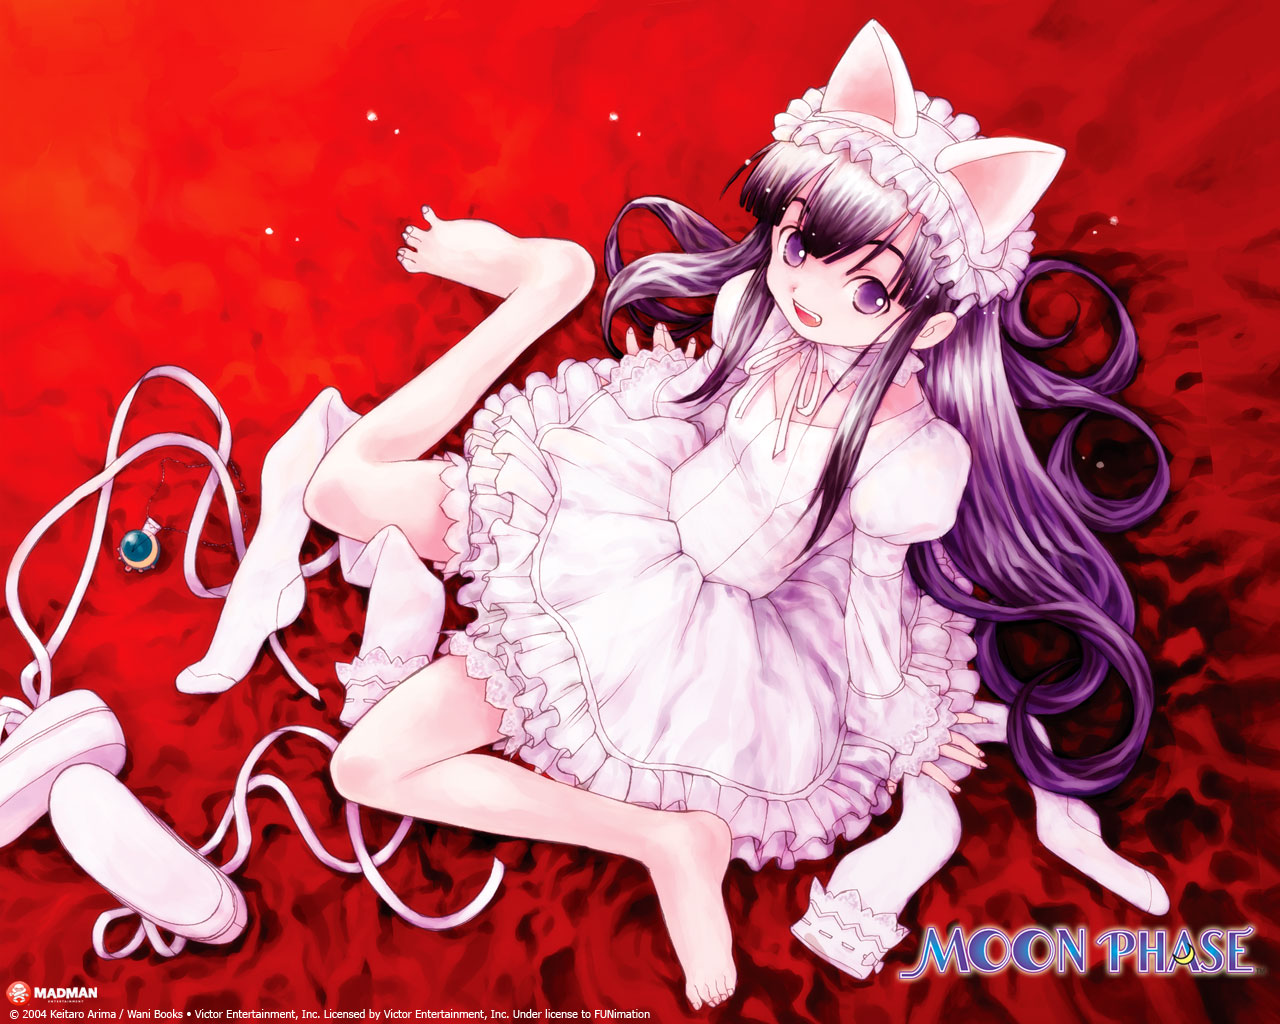 Elfriede Moon Phase  Tsukuyomi Moon Phase  Zerochan Anime Image Board  Mobile